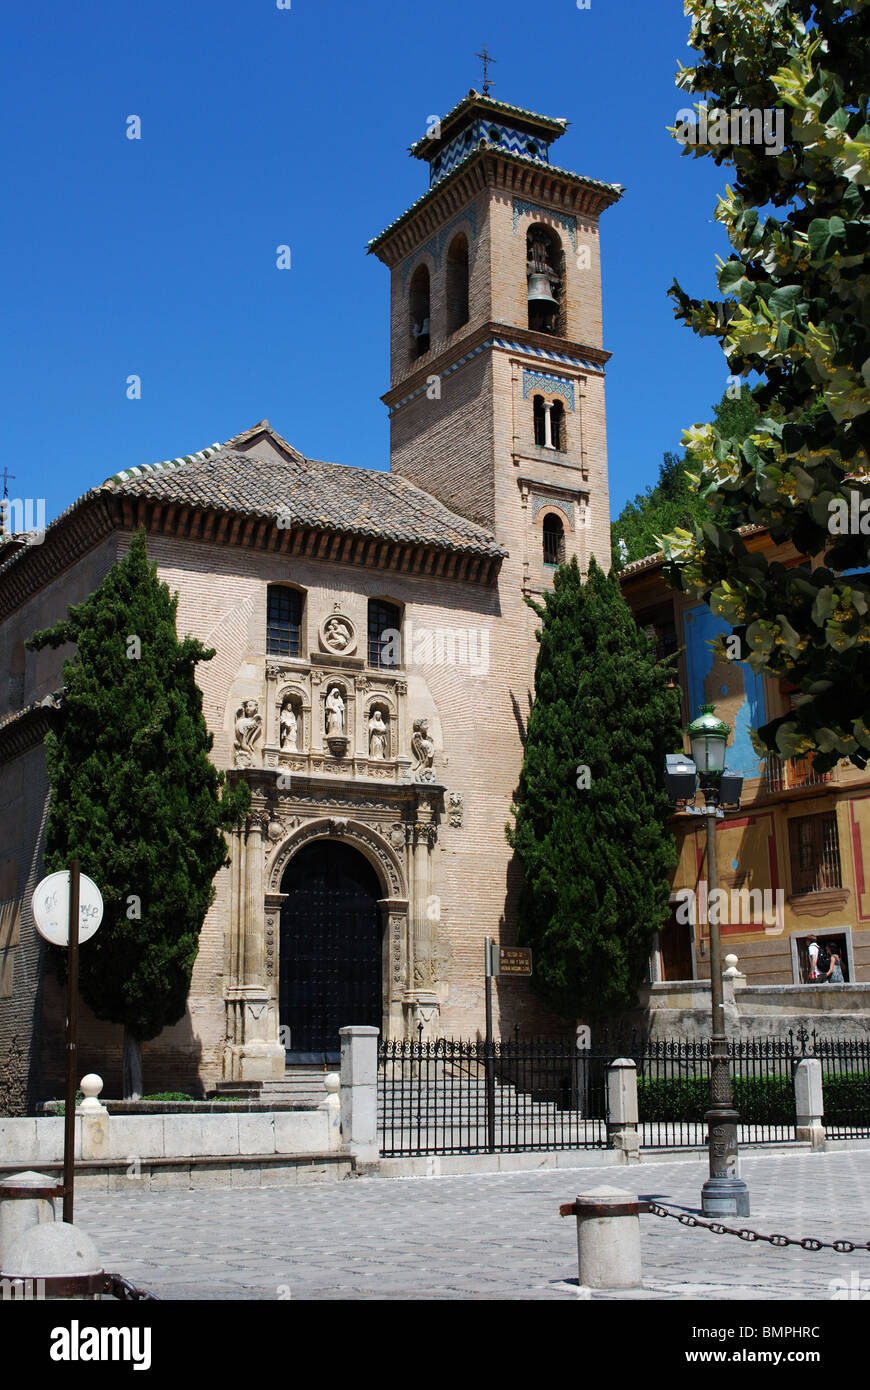 Iglesia (Church) Santa Ana in La Plaza Nueva, Carrera del Darro, Albaicin District, Granada, Granada Province, Andalucia, Spain. Stock Photo